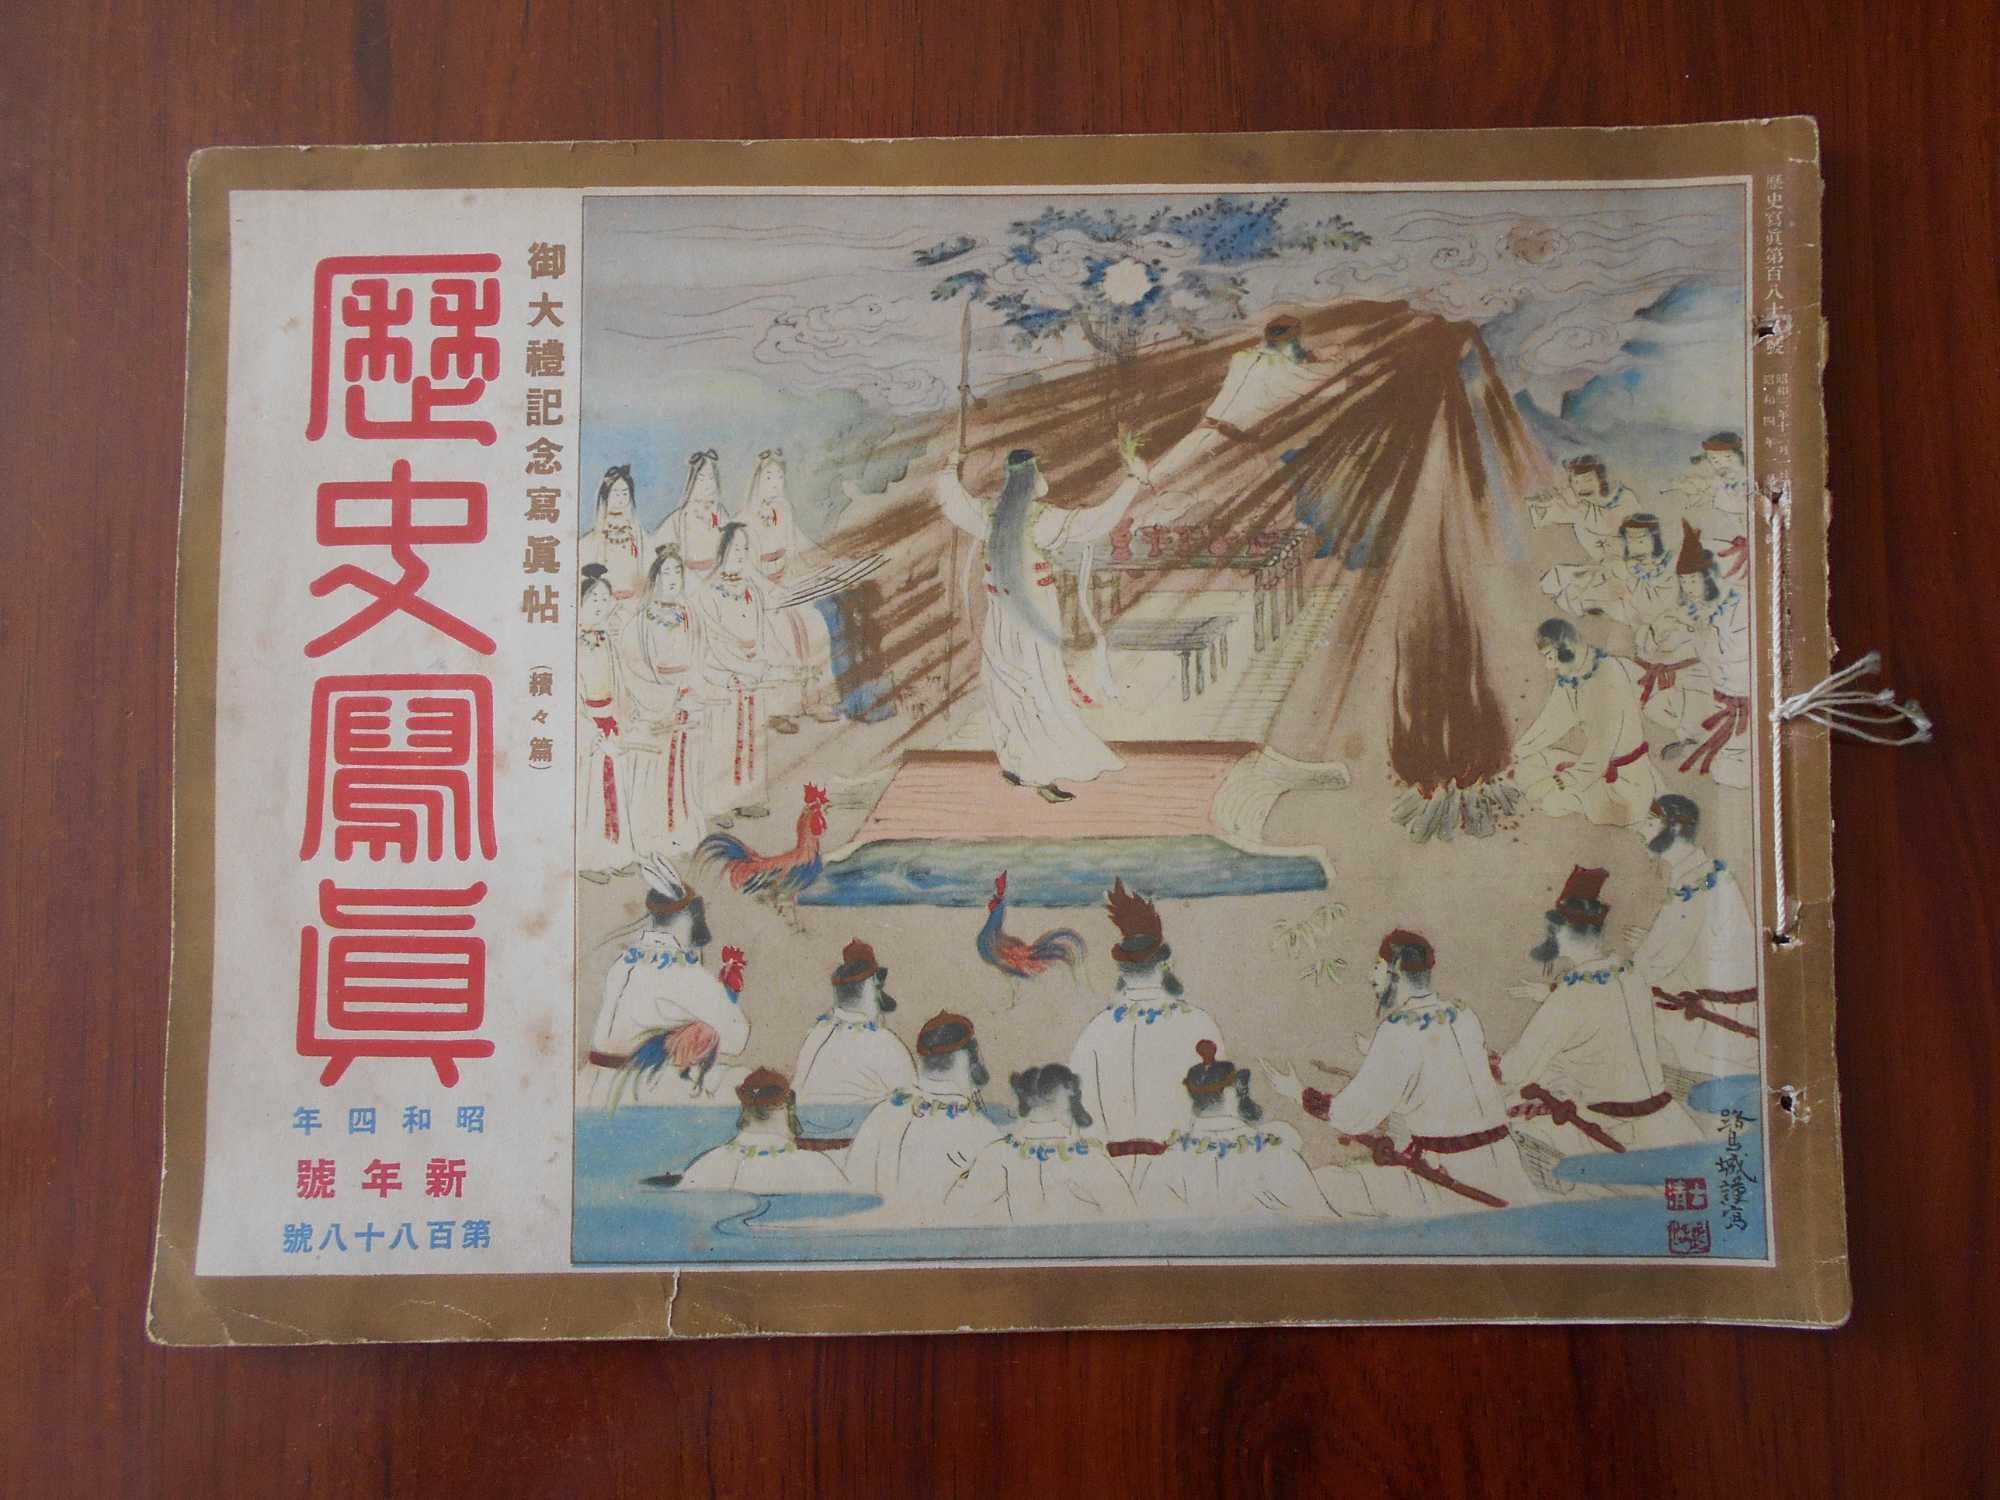 RARO álbum do Japão nacionalista com imagens do Imperador Hirohito.